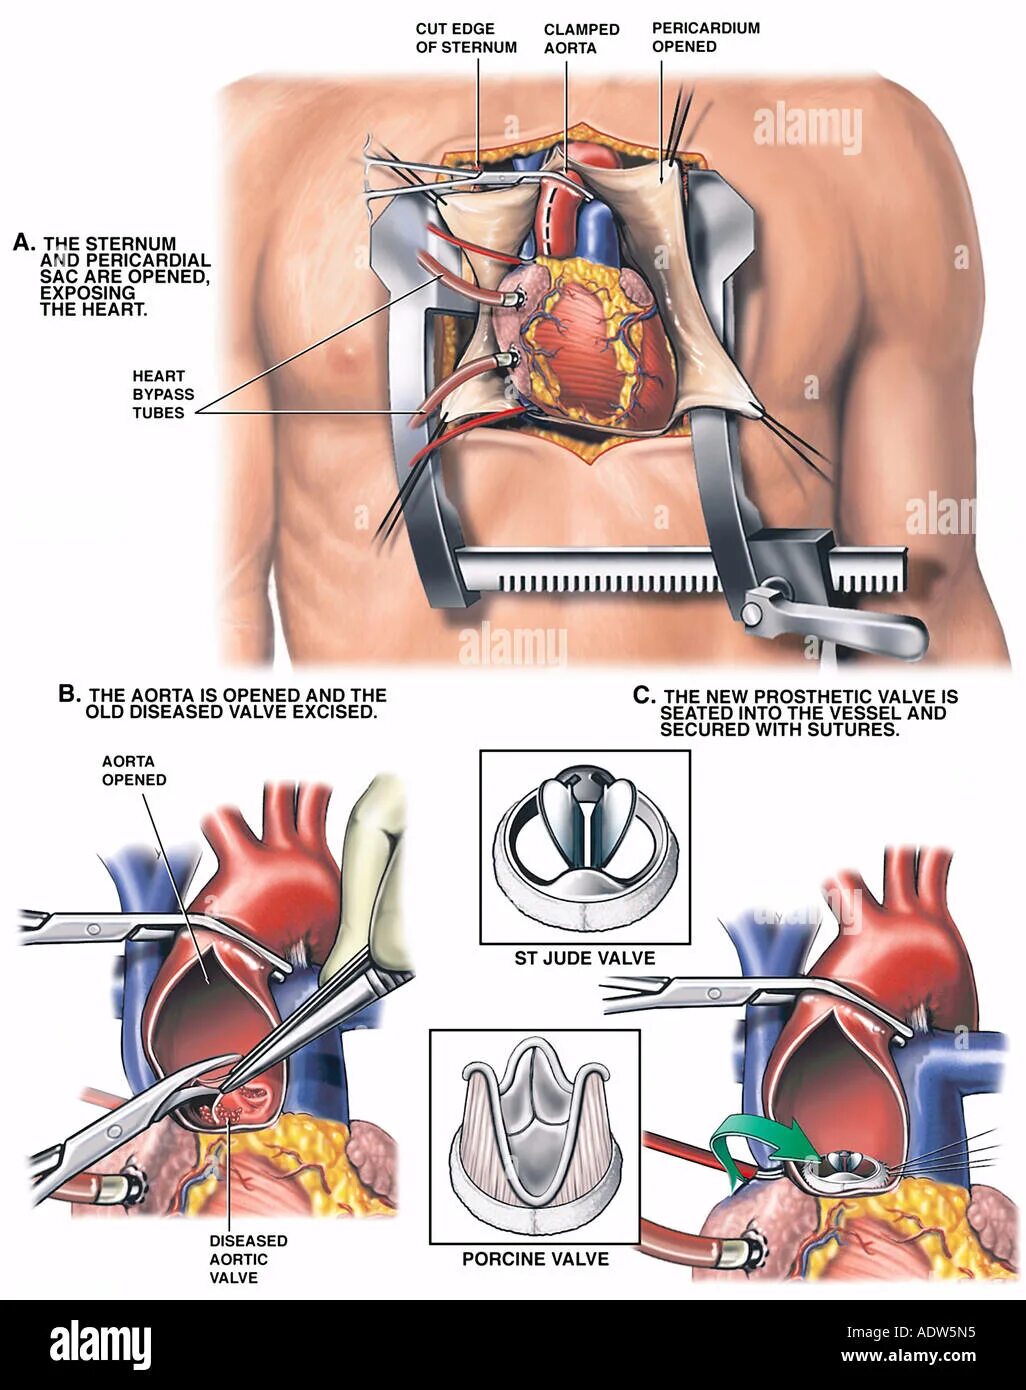 Реабилитация после замены клапана. Протезирование аортального клапана операция. Операция на сердце аортальный клапан. Операции на о крытом сердце. Операция на сердце замена клапана.